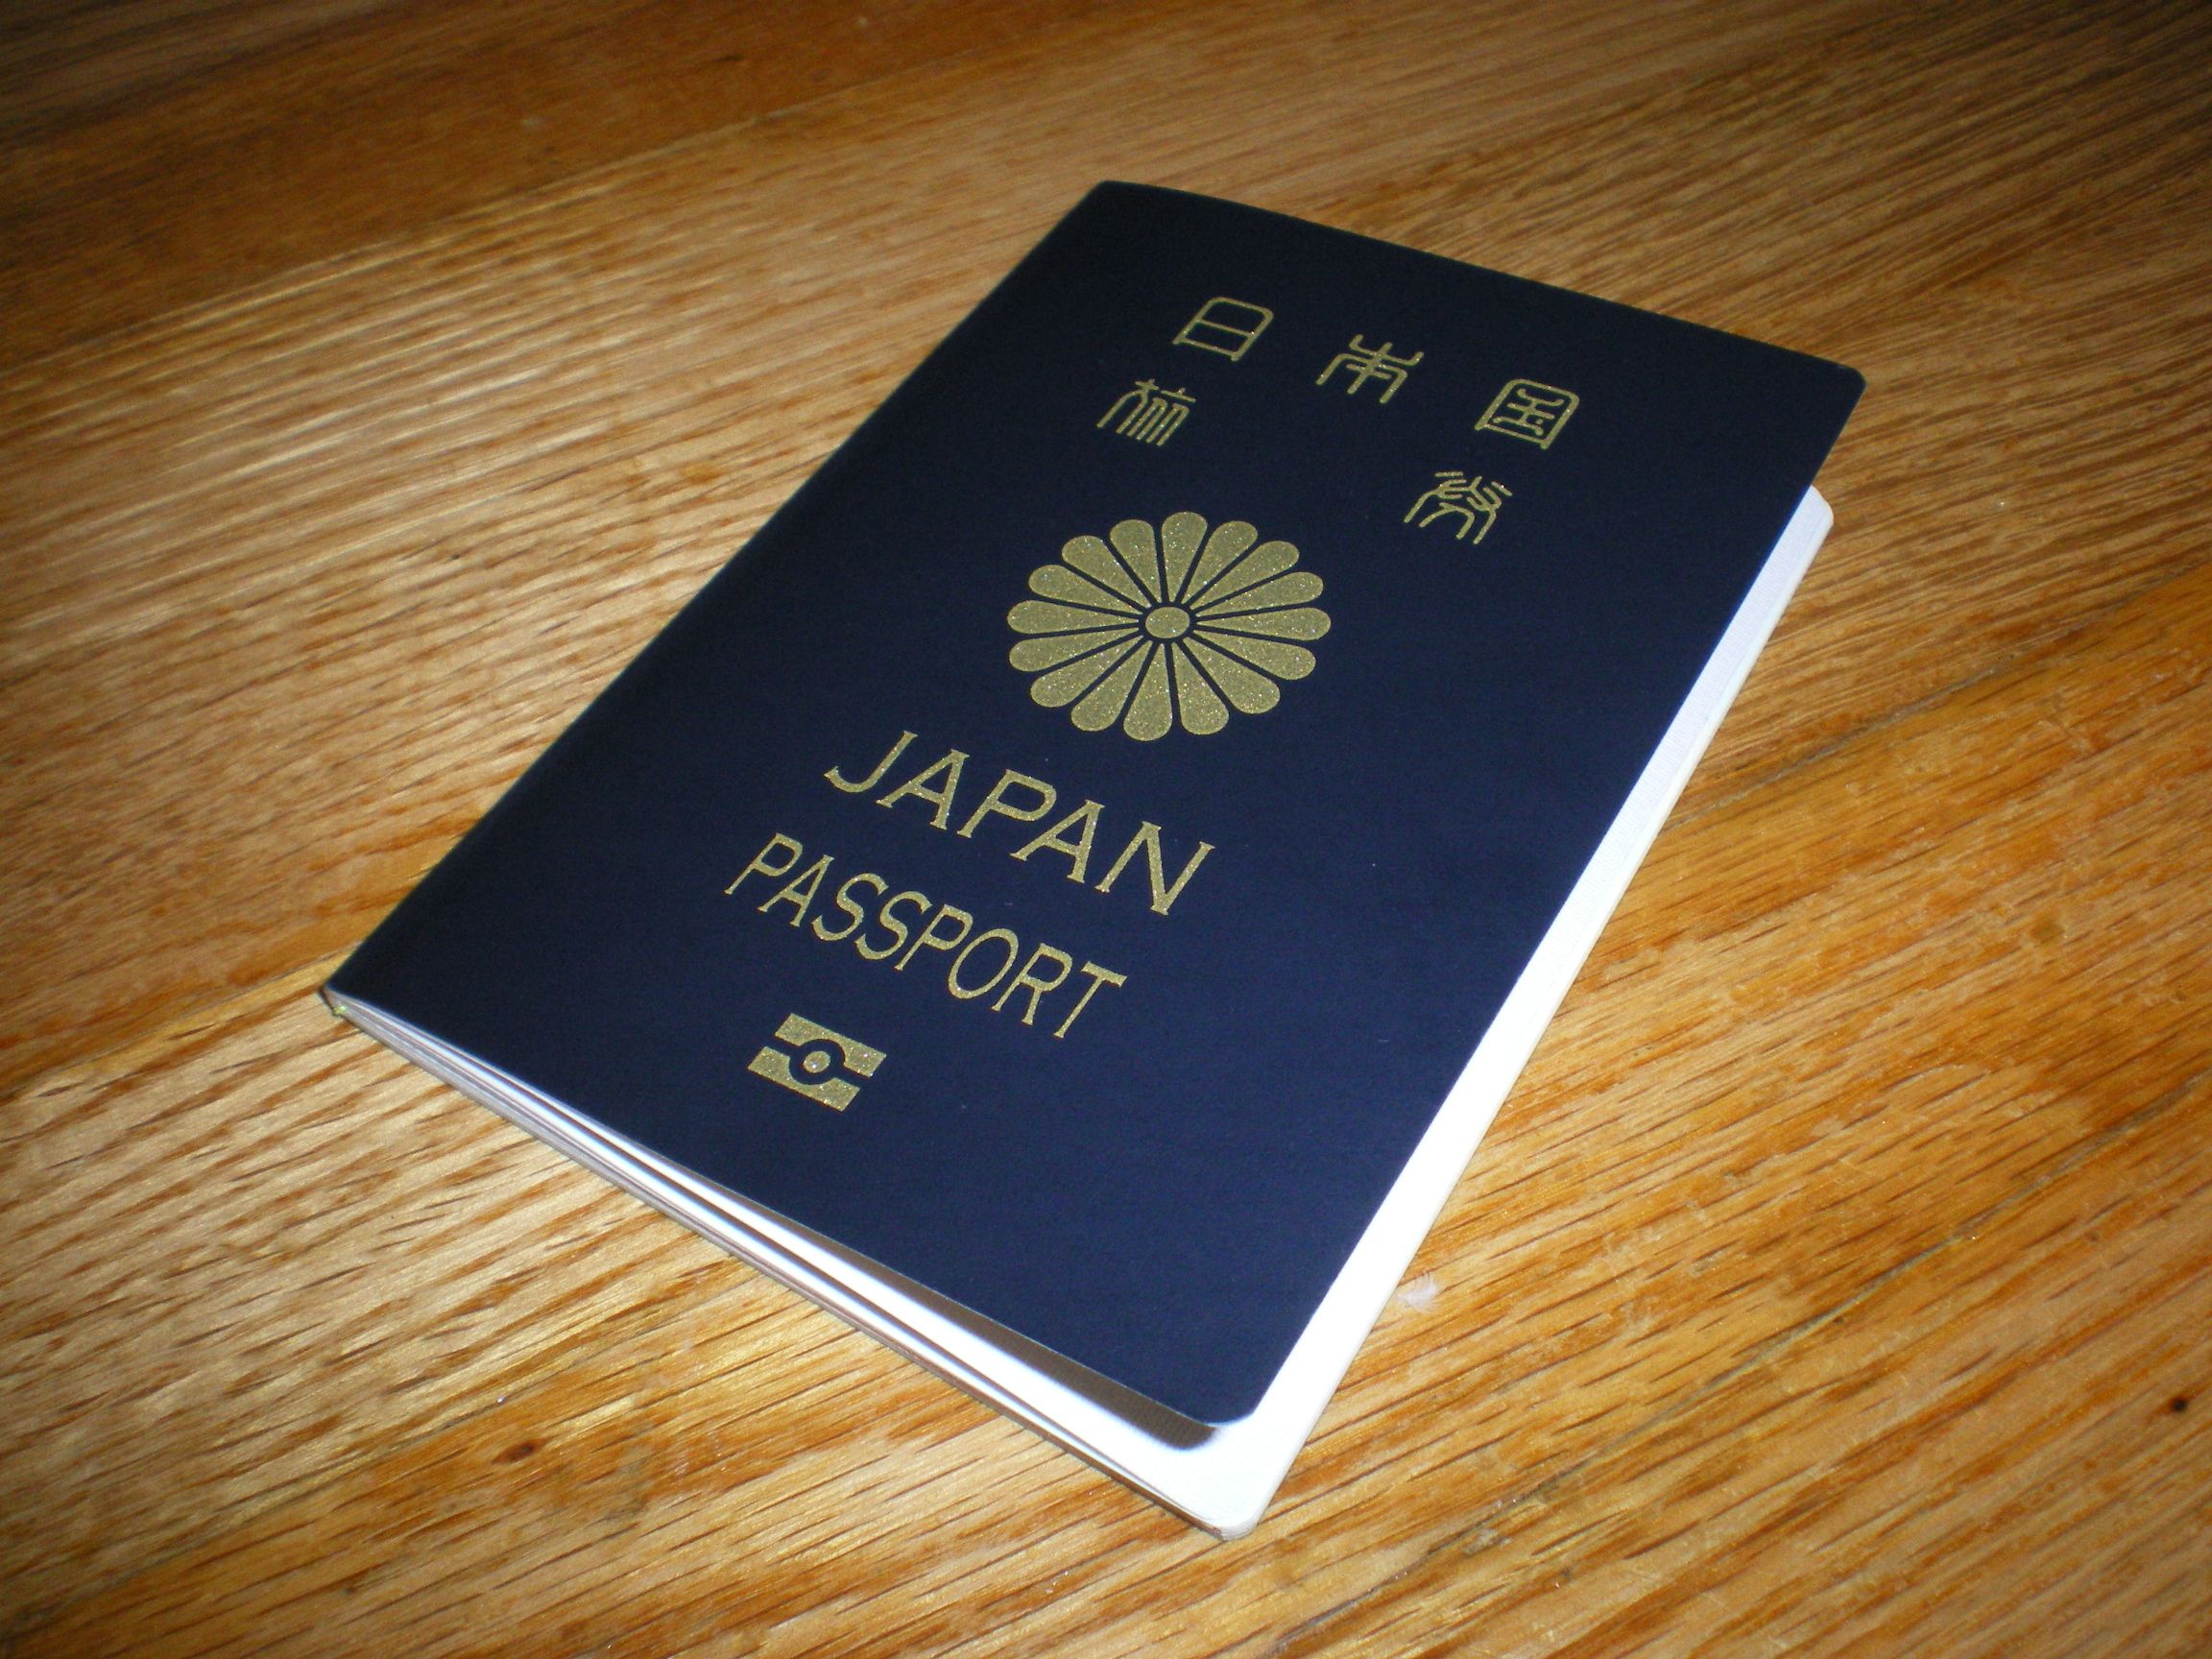 Japanese_biometric_passport.jpg